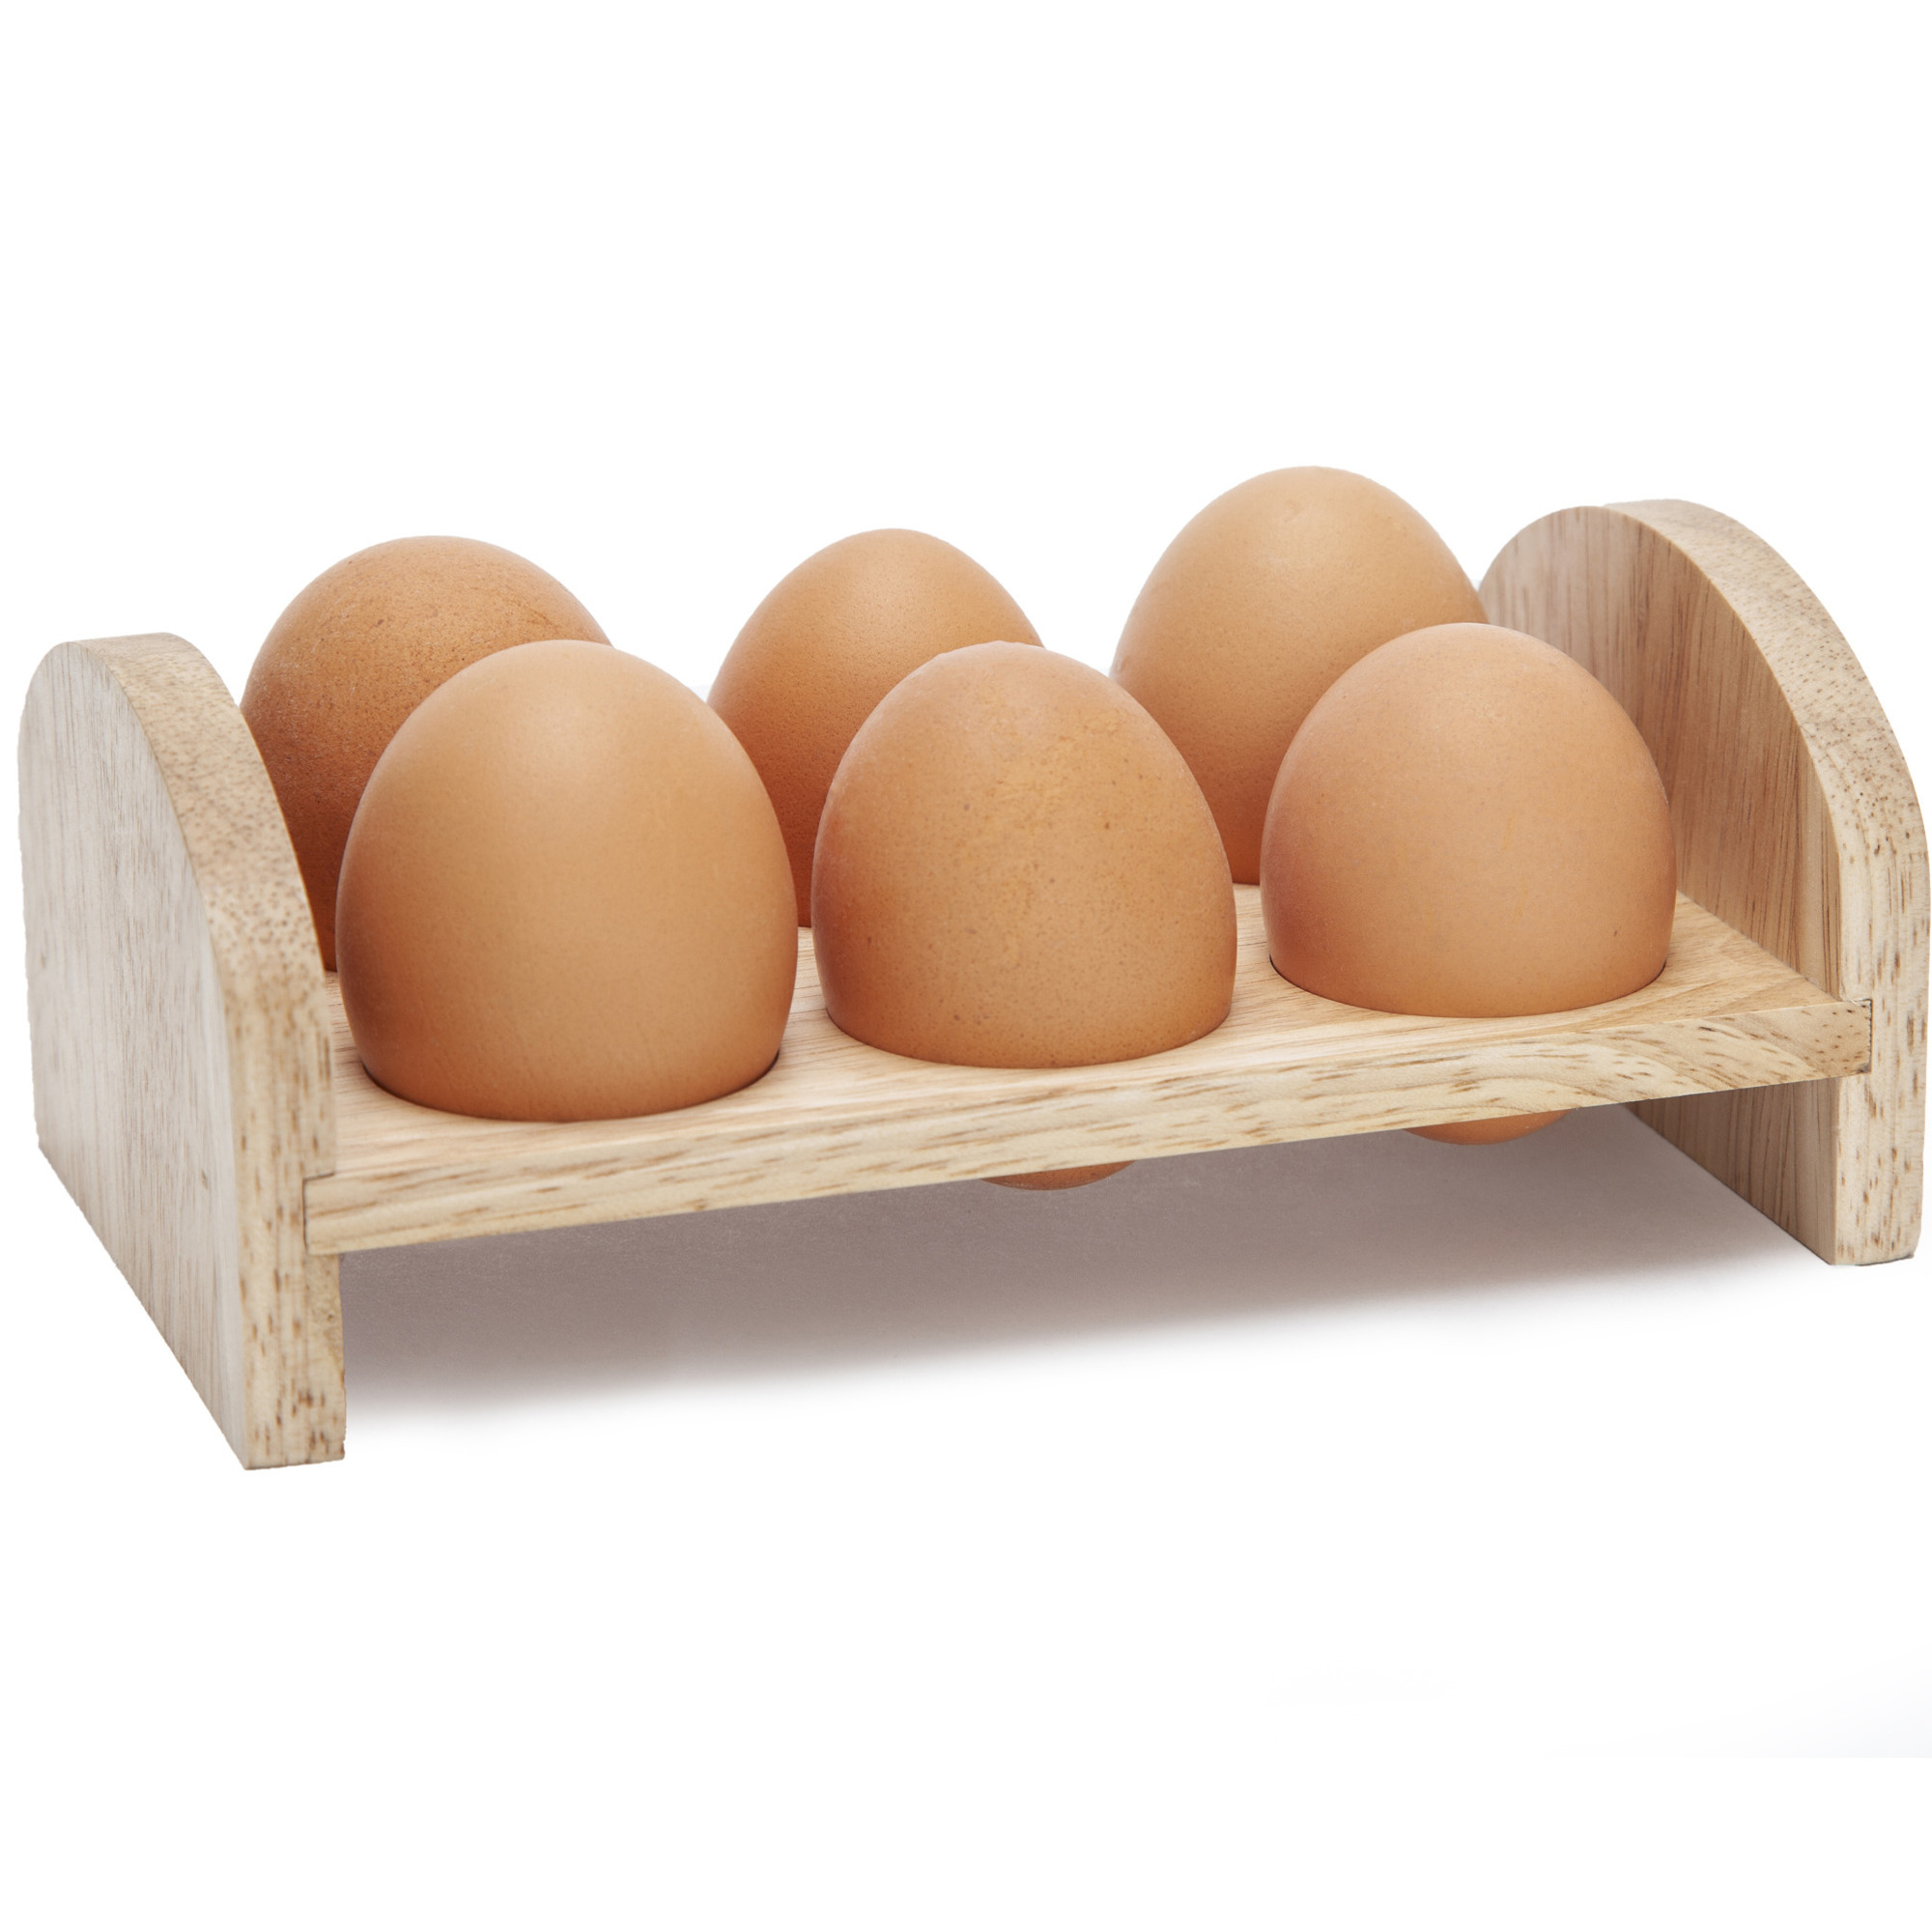 Ei rekje/houder van hout voor 6 eieren 17 x 10 cm